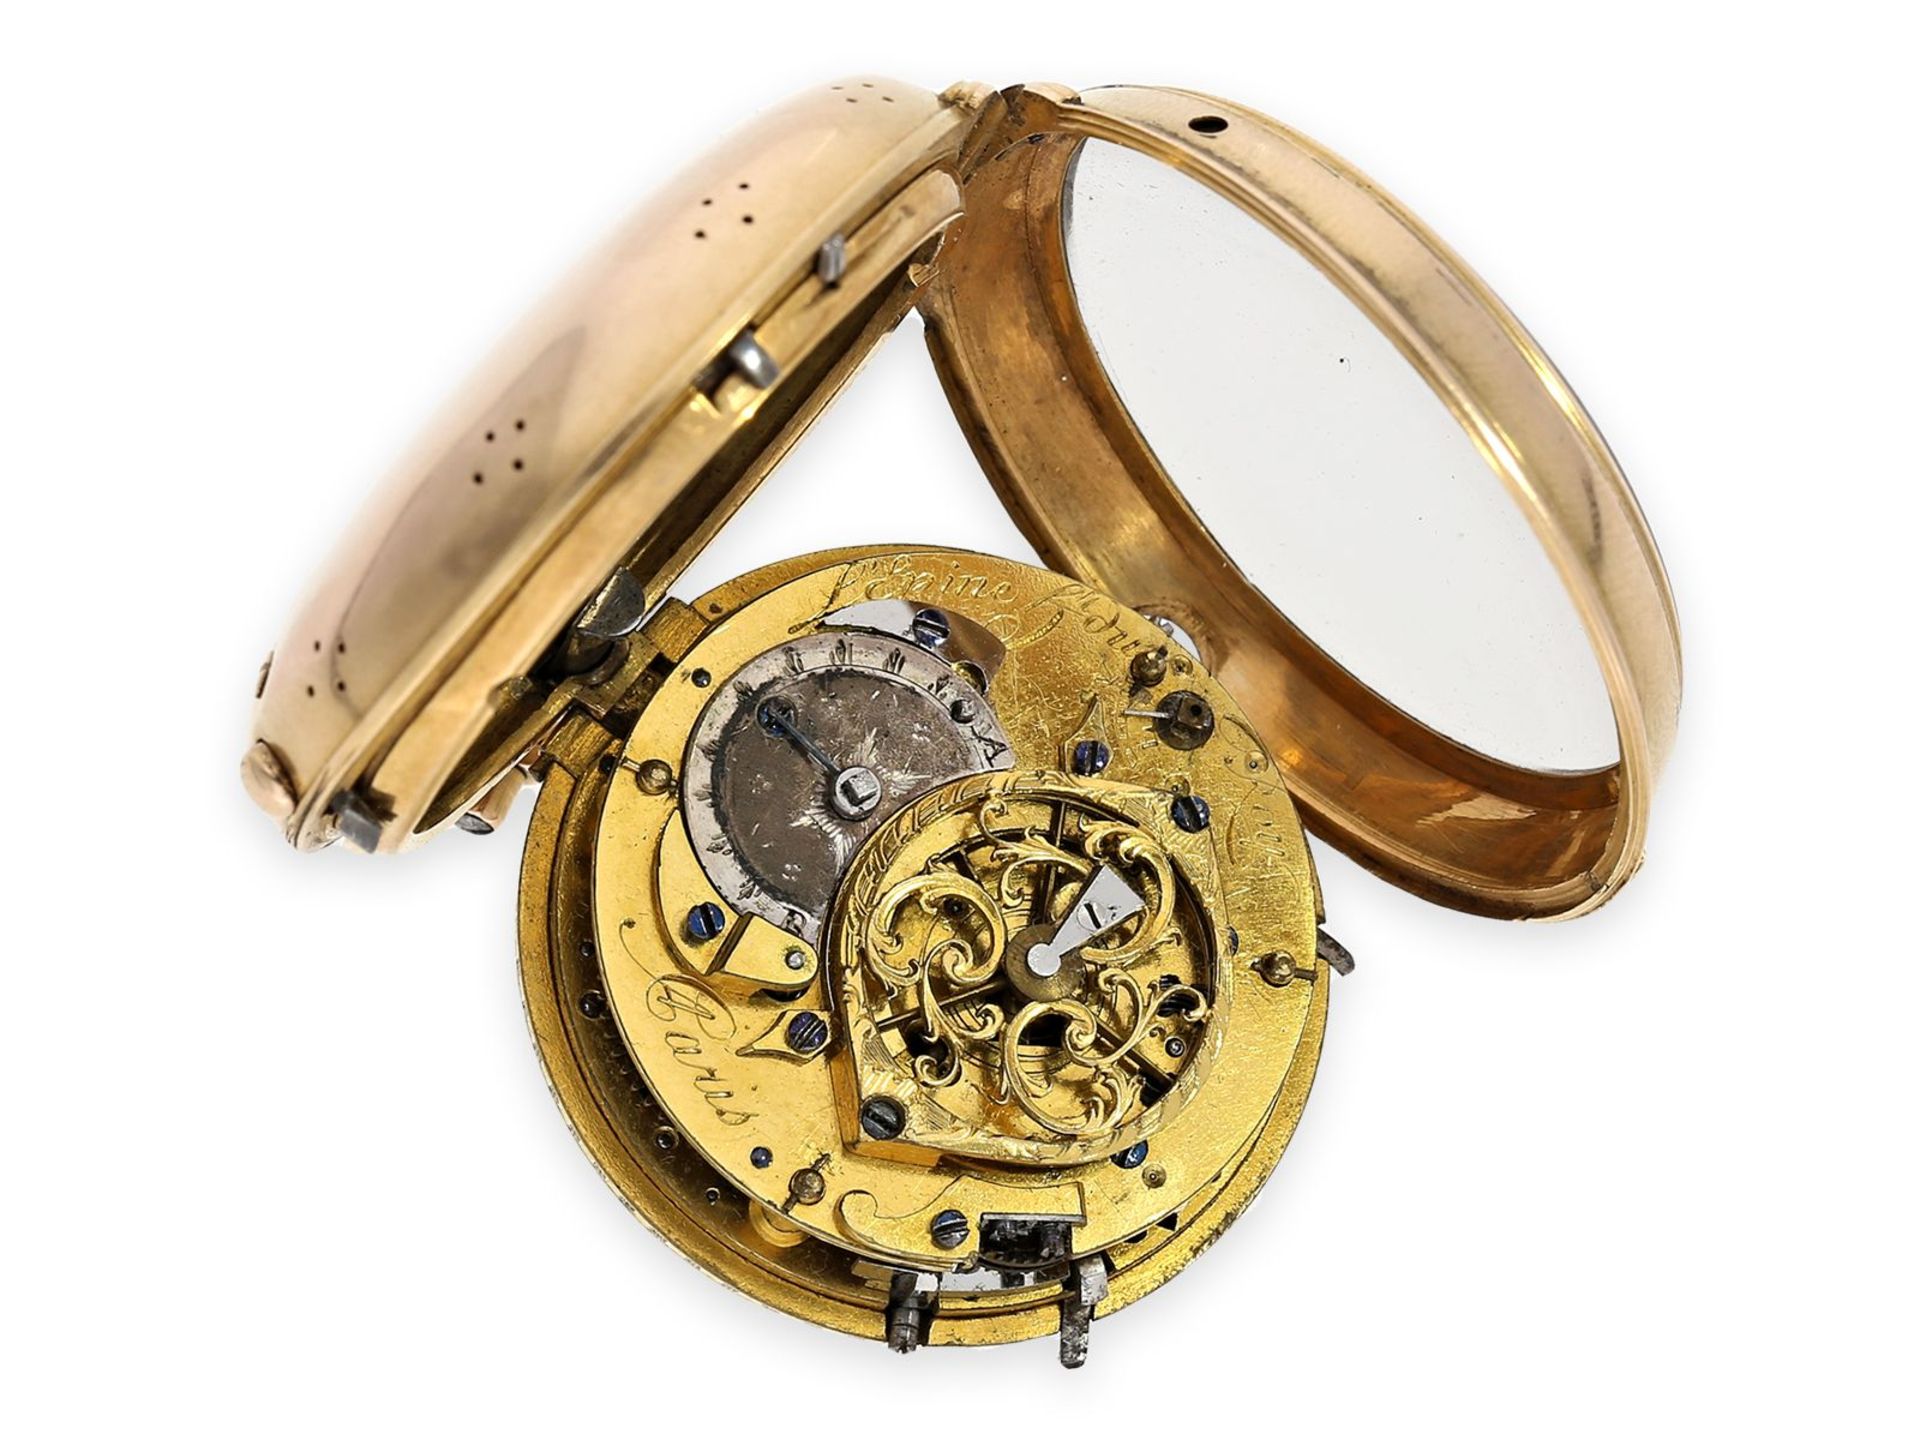 Taschenuhr: hochfeine goldene Louis XV Spindeluhr mit Repetition a toc et a tact, signiert L'Epine - Bild 2 aus 4